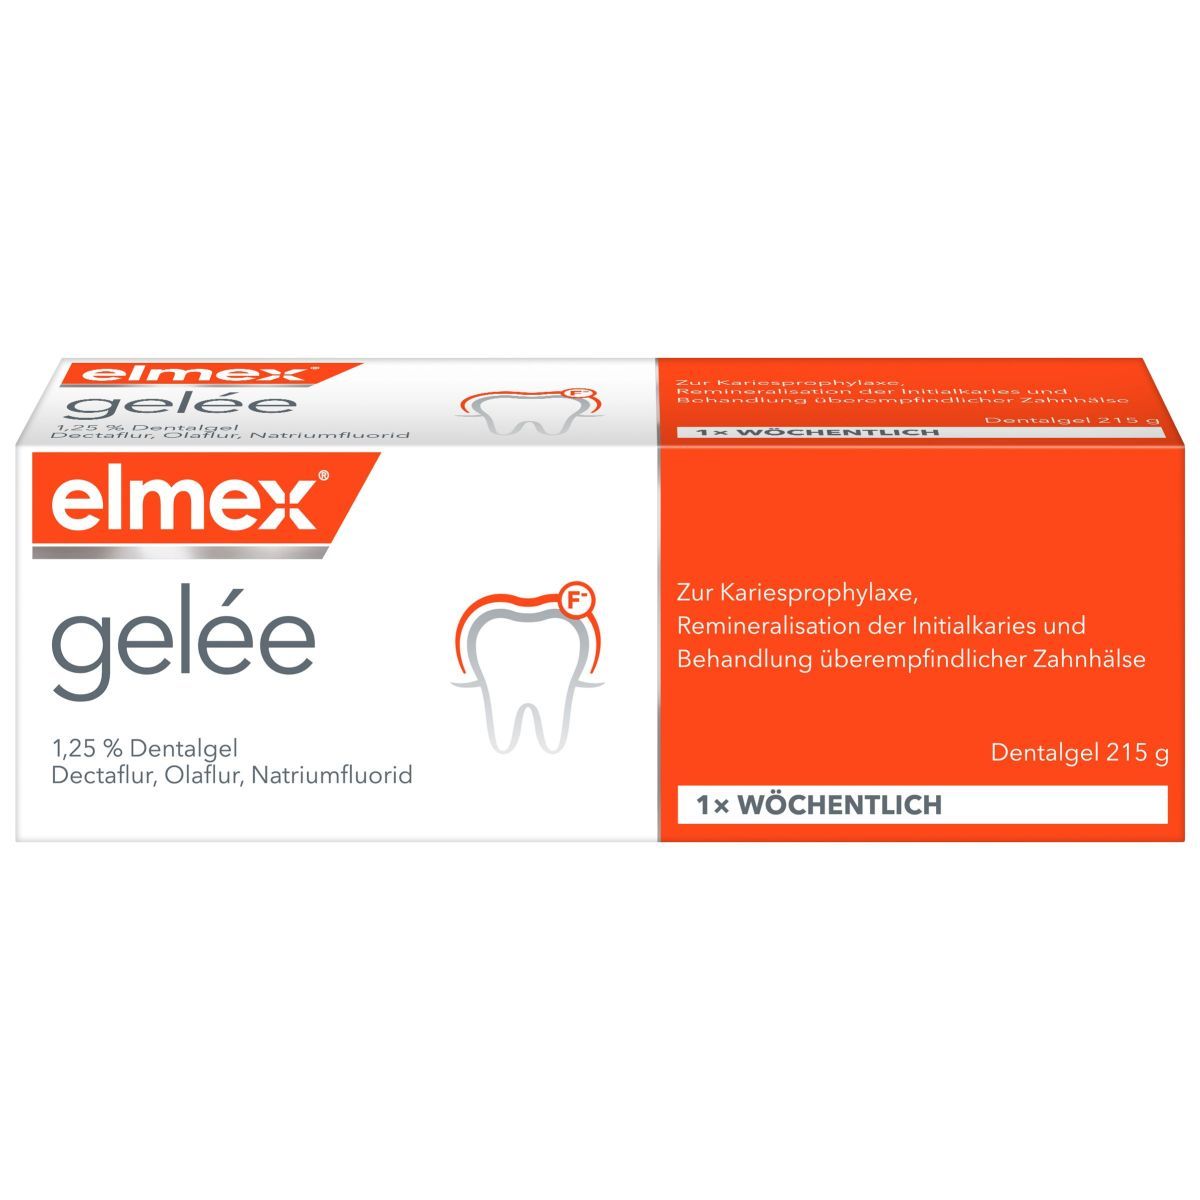 elmex® gelée (CP Gaba) kaufen